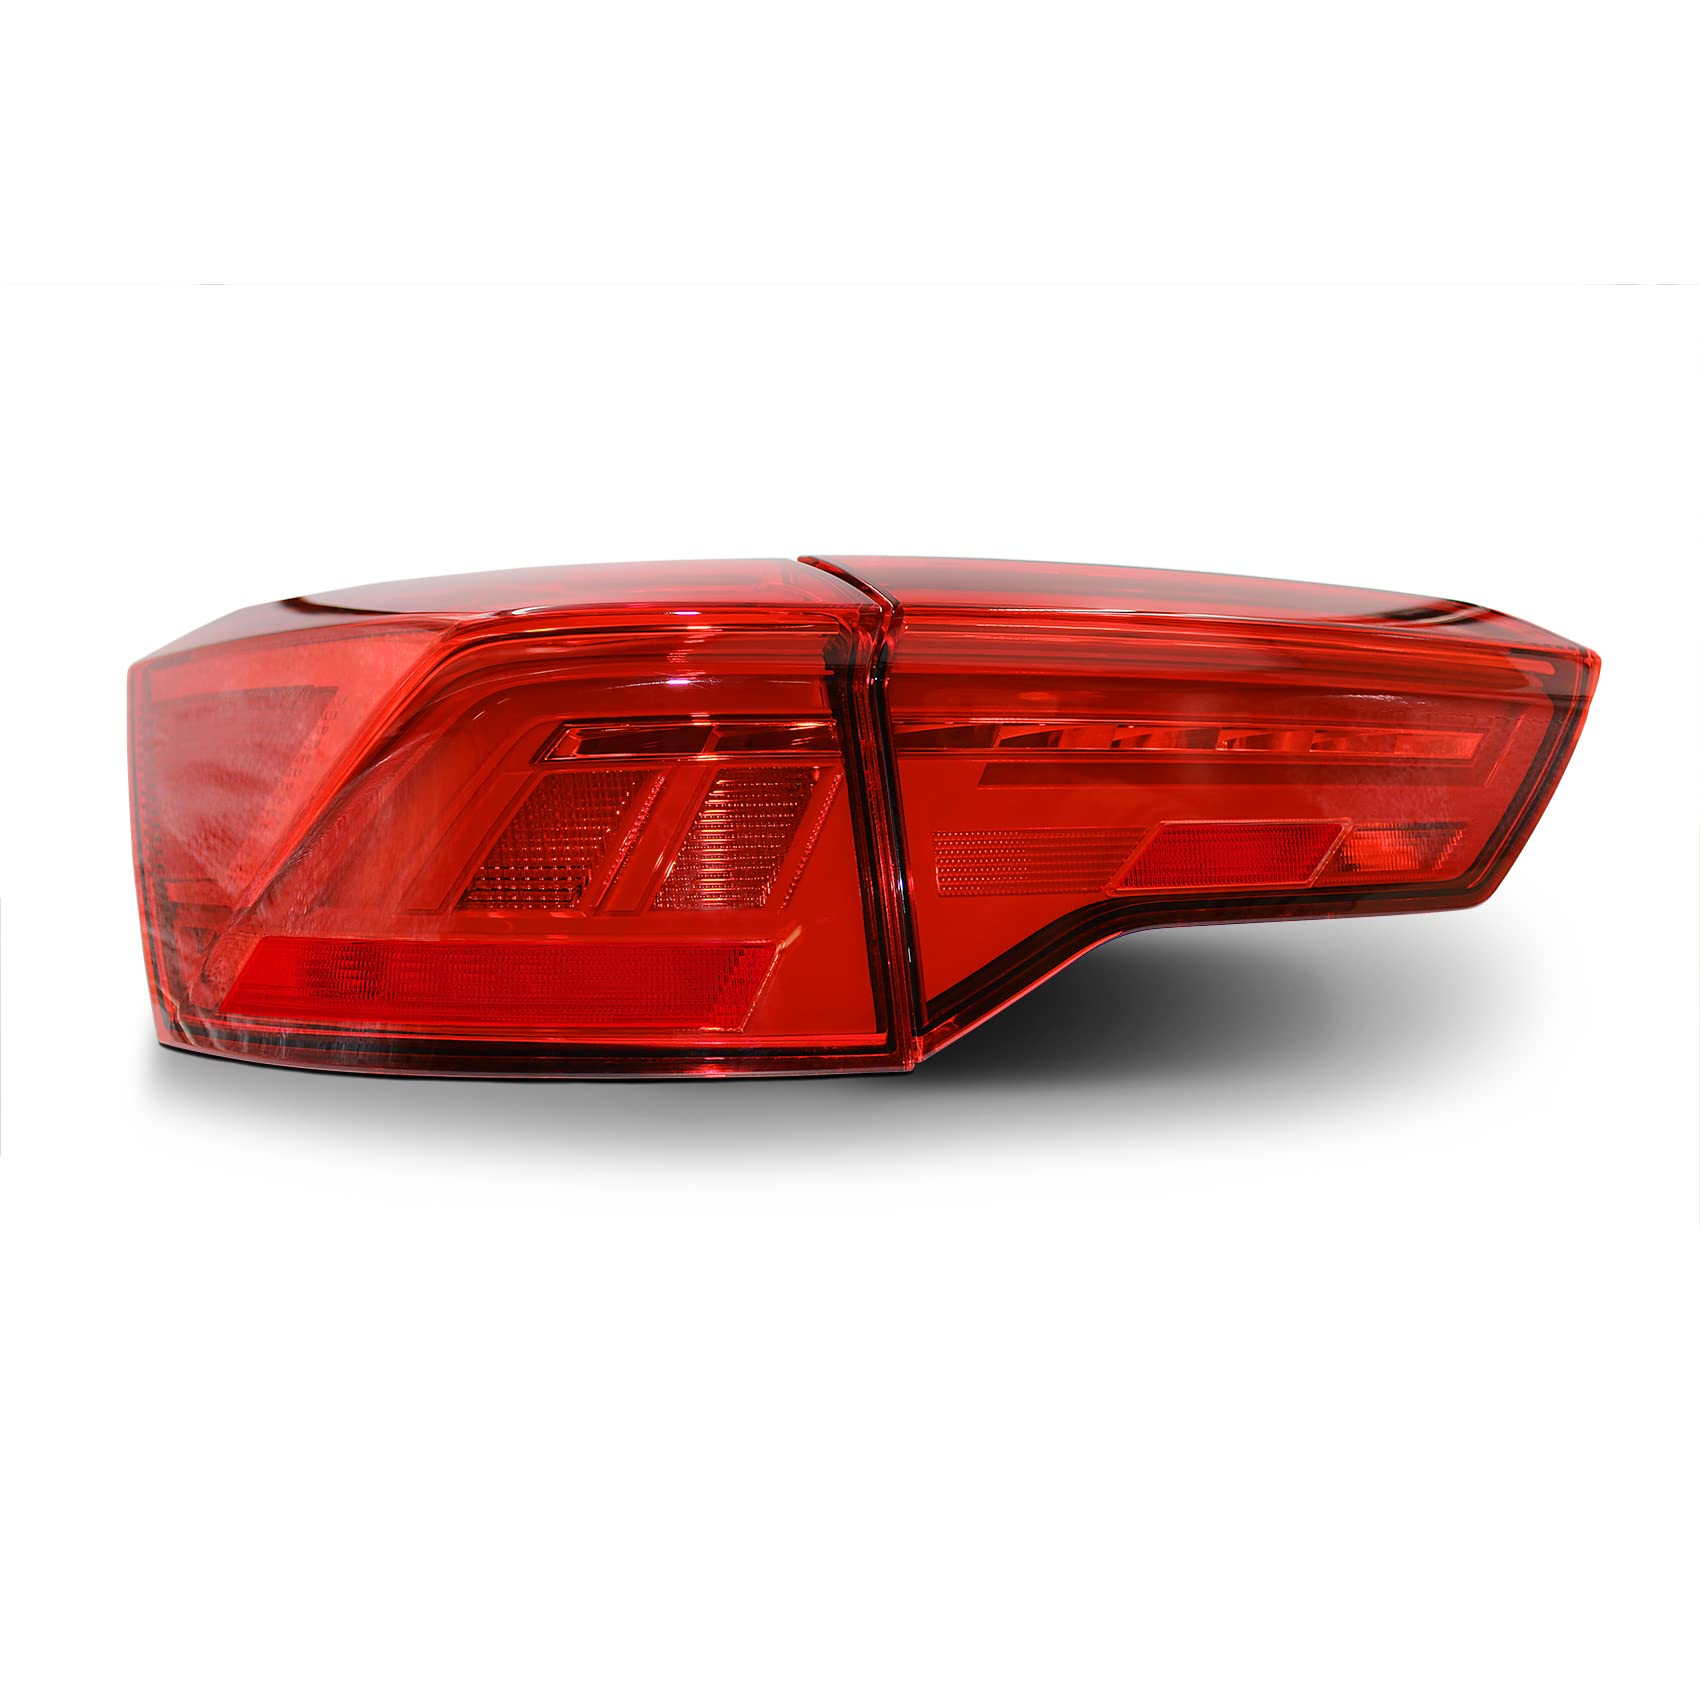 Rückleuchten Folie Set Aufkleber Tönungsfolie Heckleuchten passgenau zugeschnitten für Rückleuchte selbstklebend Kfz Auto Zubehör C071 (Red) von Finest Folia